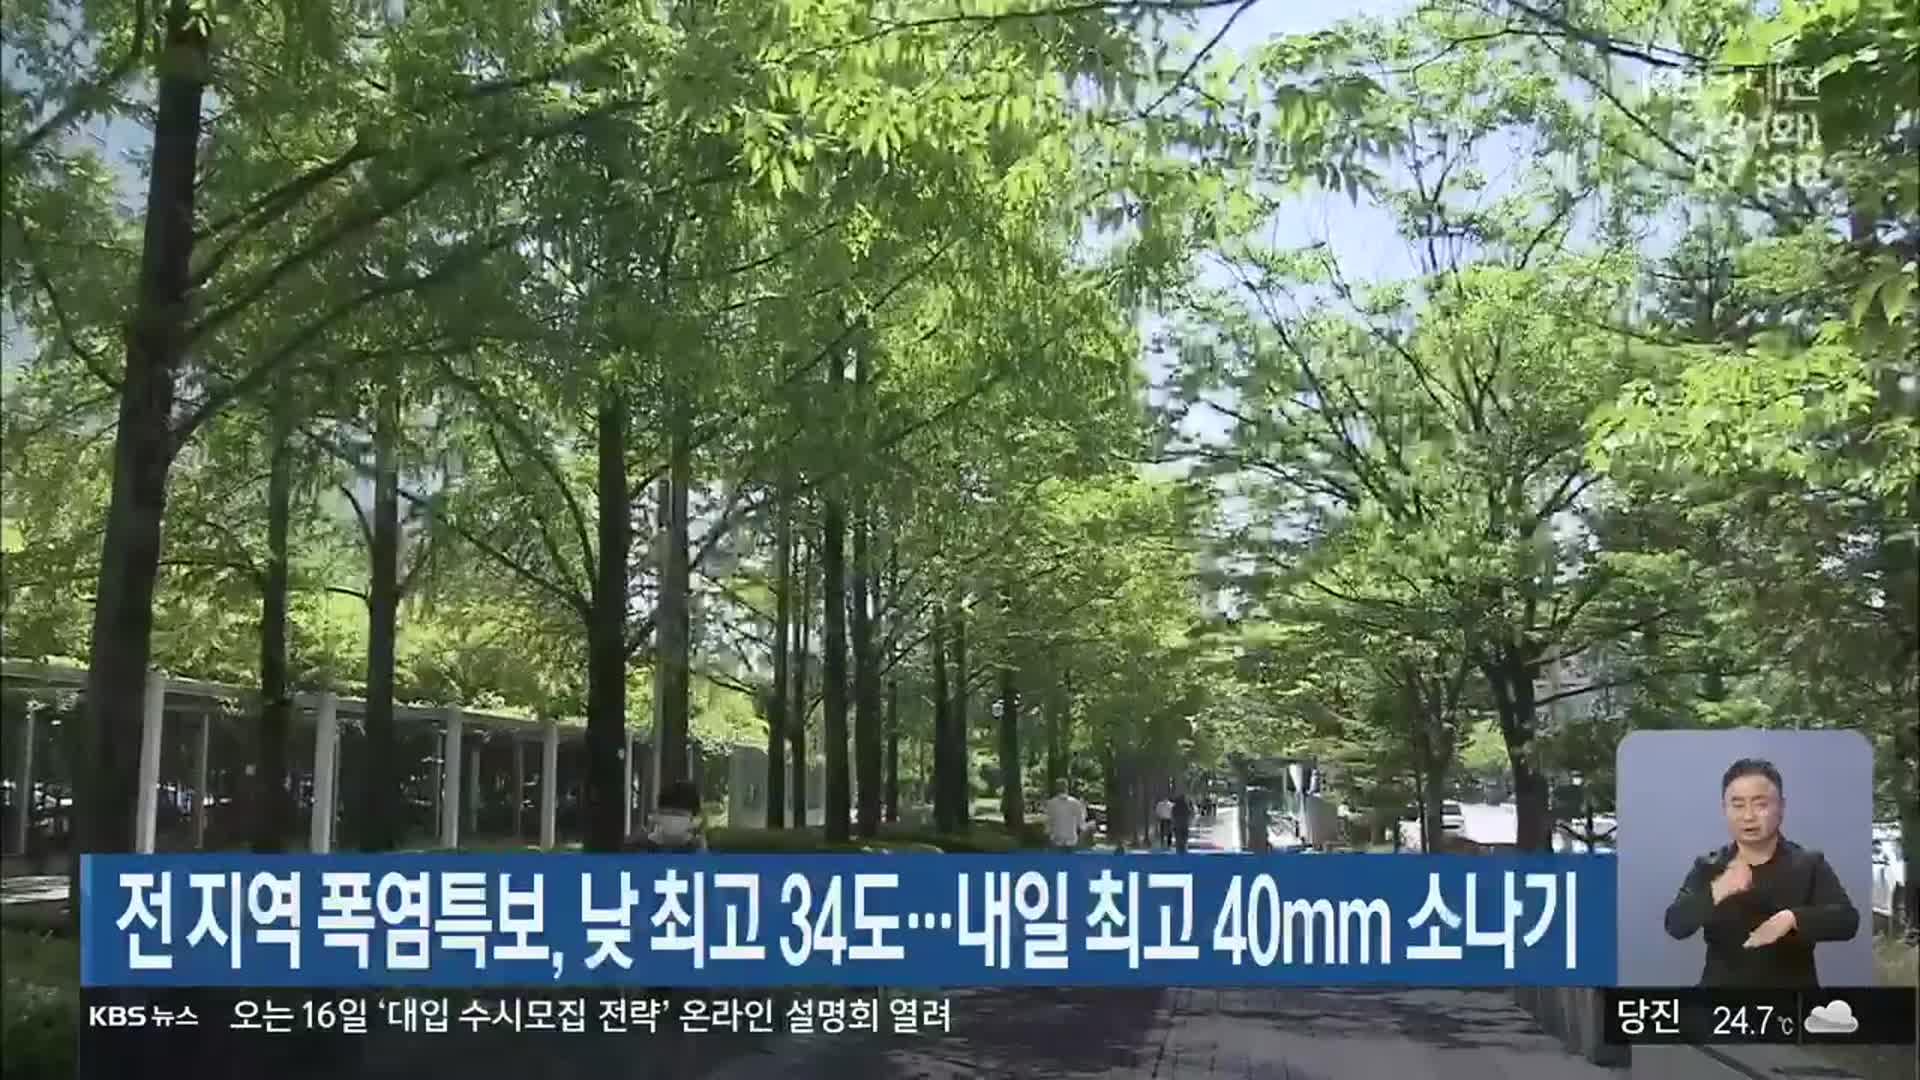 대전·세종·충남 전 지역 폭염특보, 낮 최고 34도…내일 최고 40mm 소나기